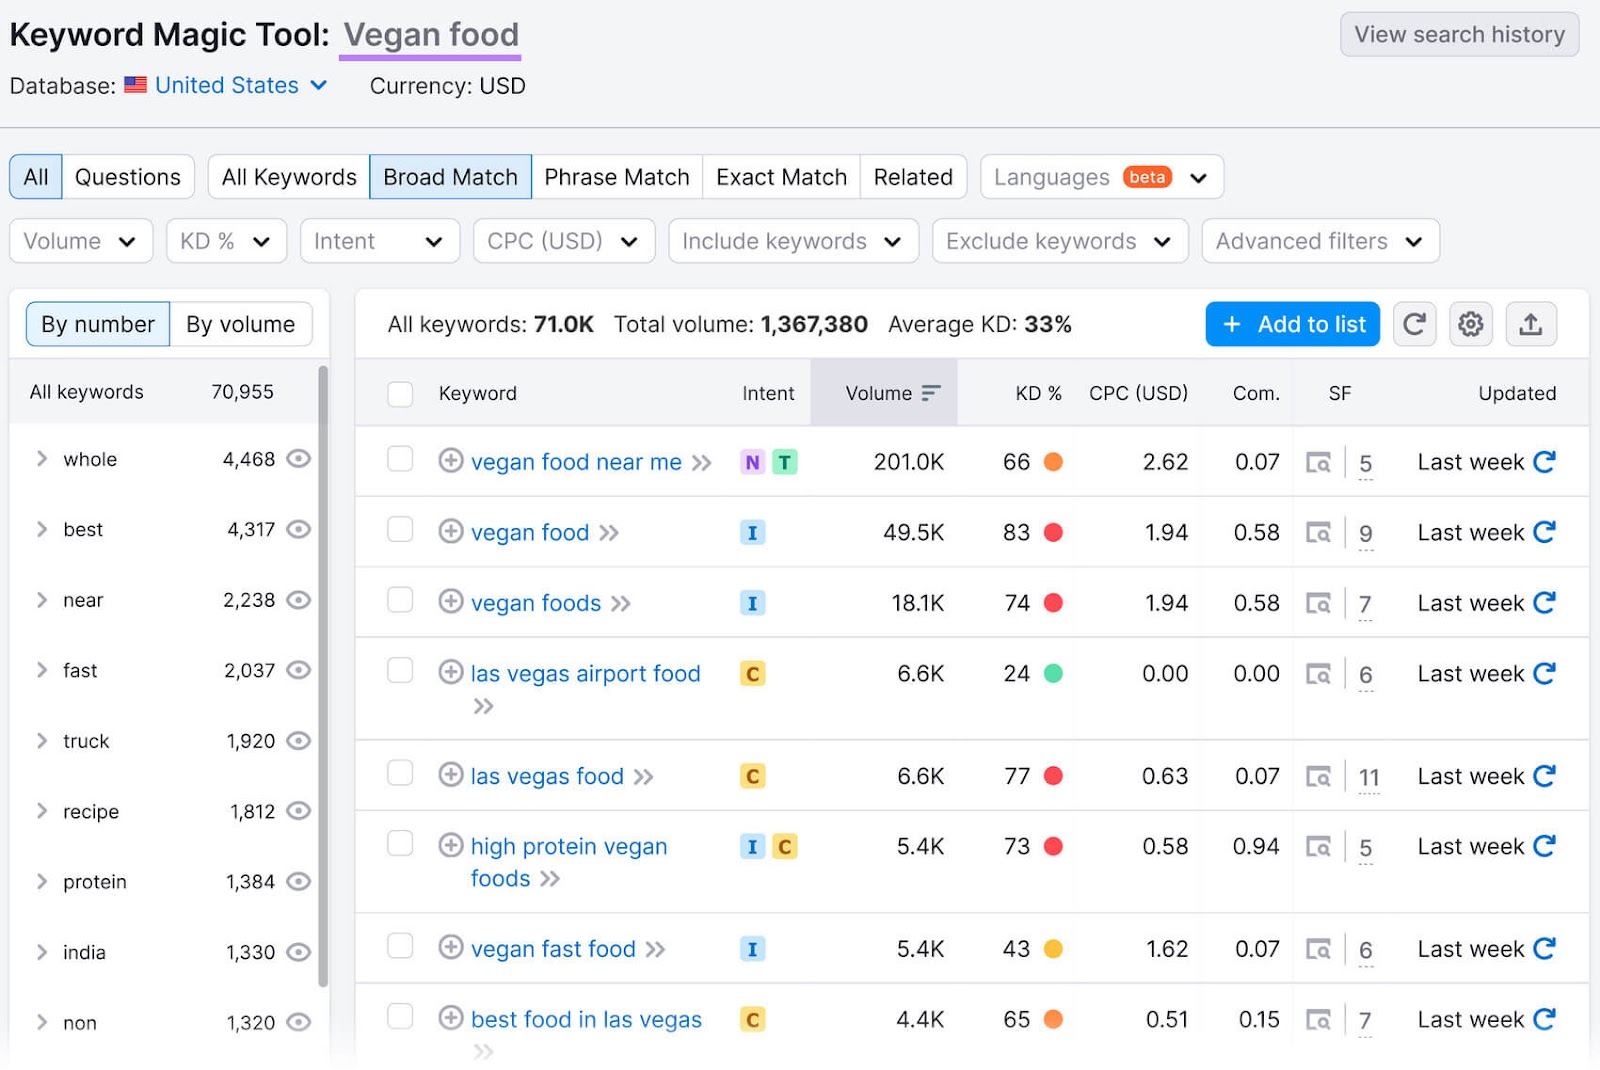 Keyword Magic Tool results for "vegan food"